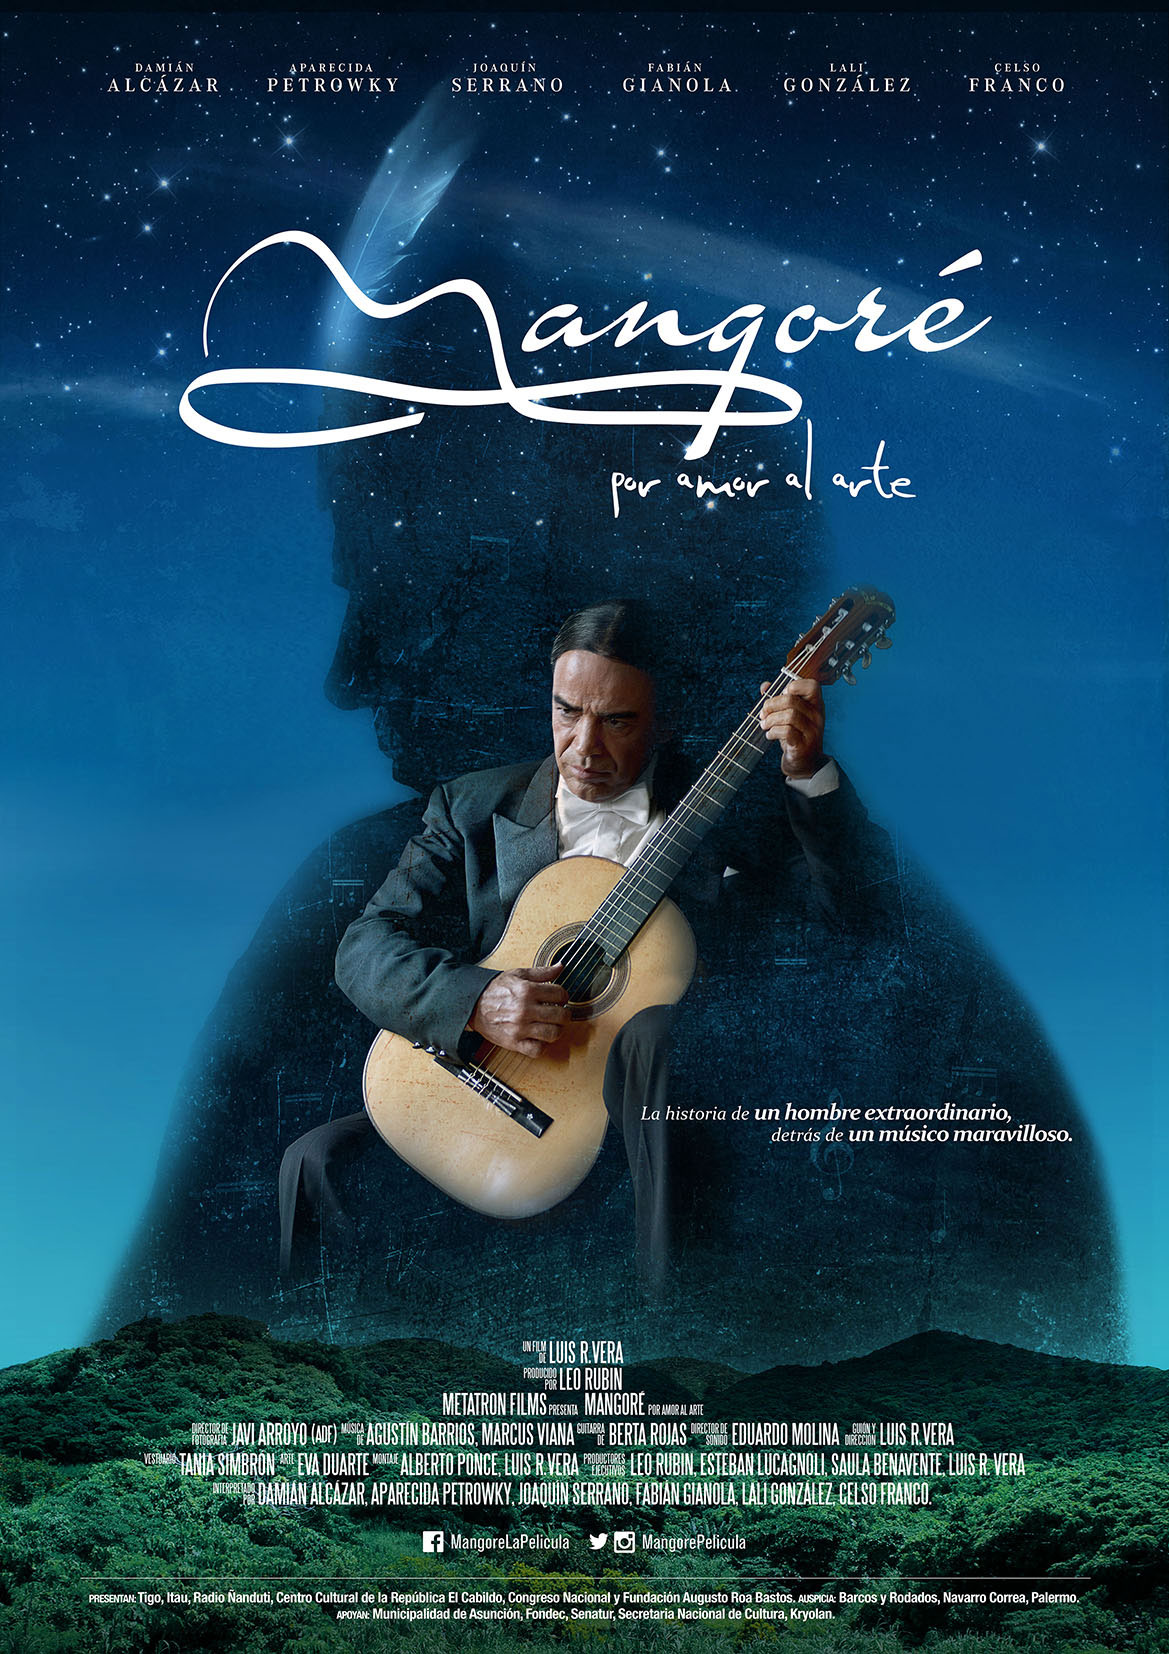 « Mangoré, por Amor al Arte » @ Vaudeville Theater